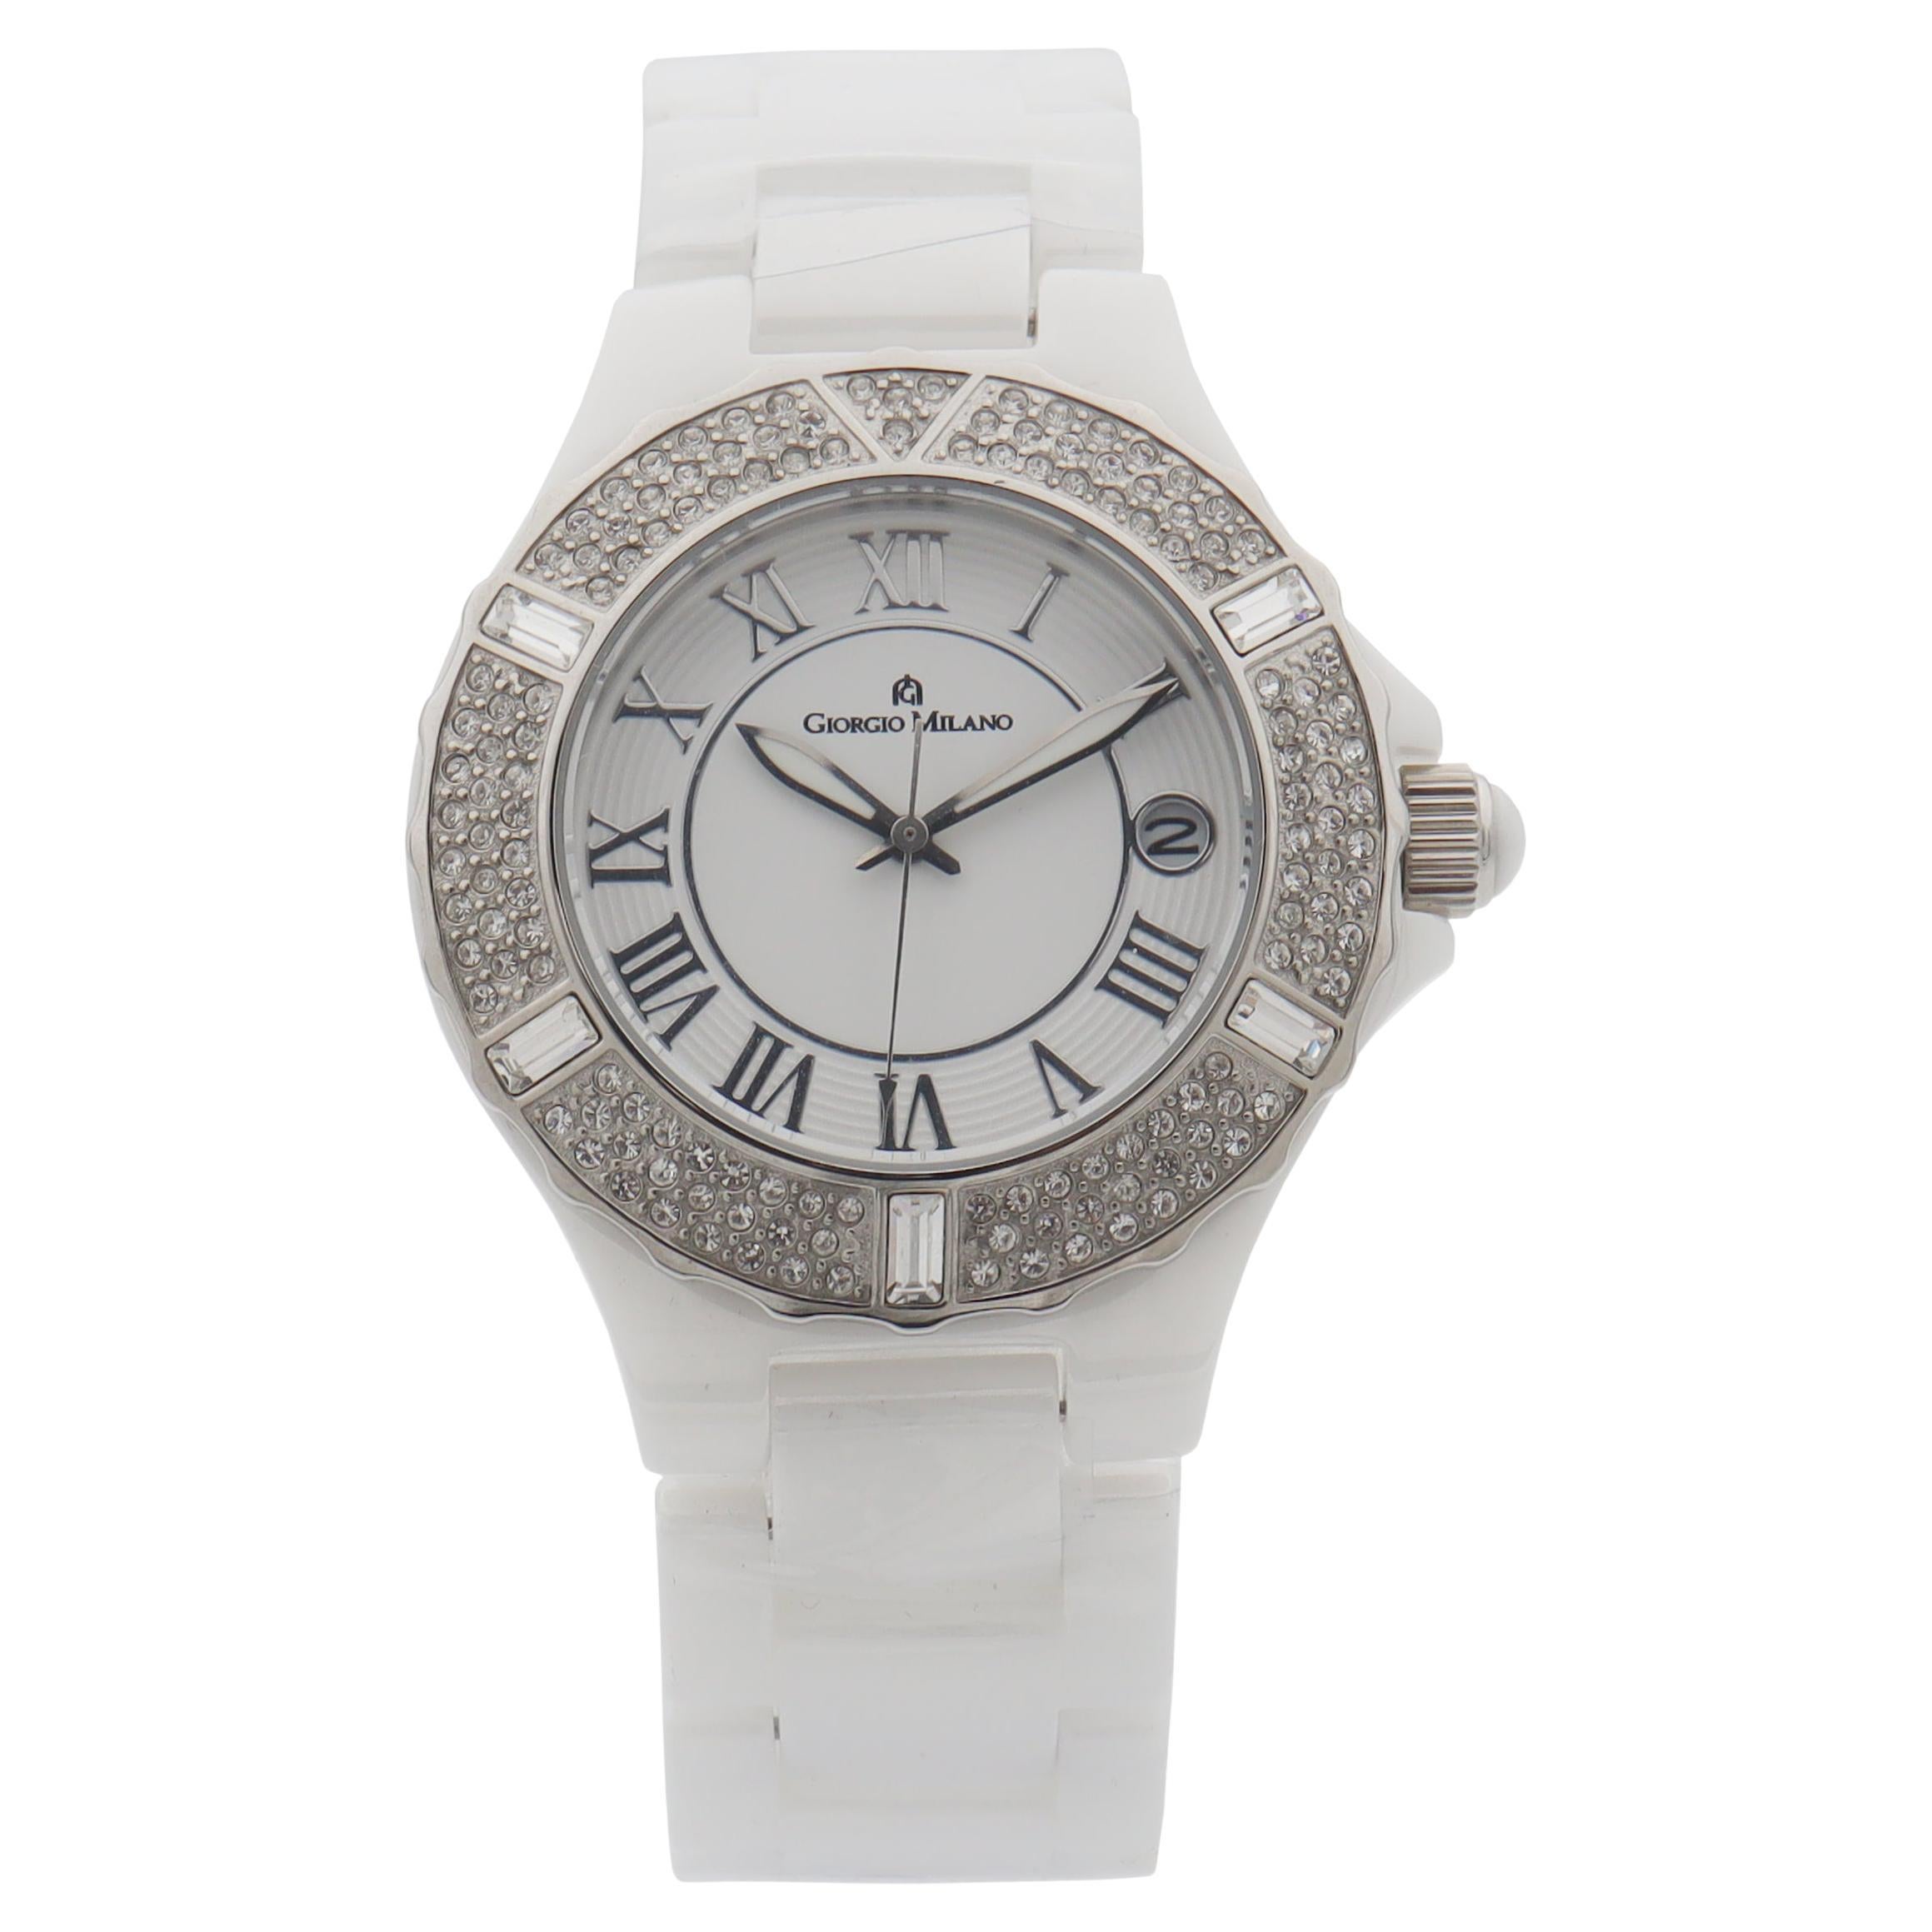 Giorgio Milano Ceramic Date White Dial Quartz Ladies Watch 863CWST01 For Sale